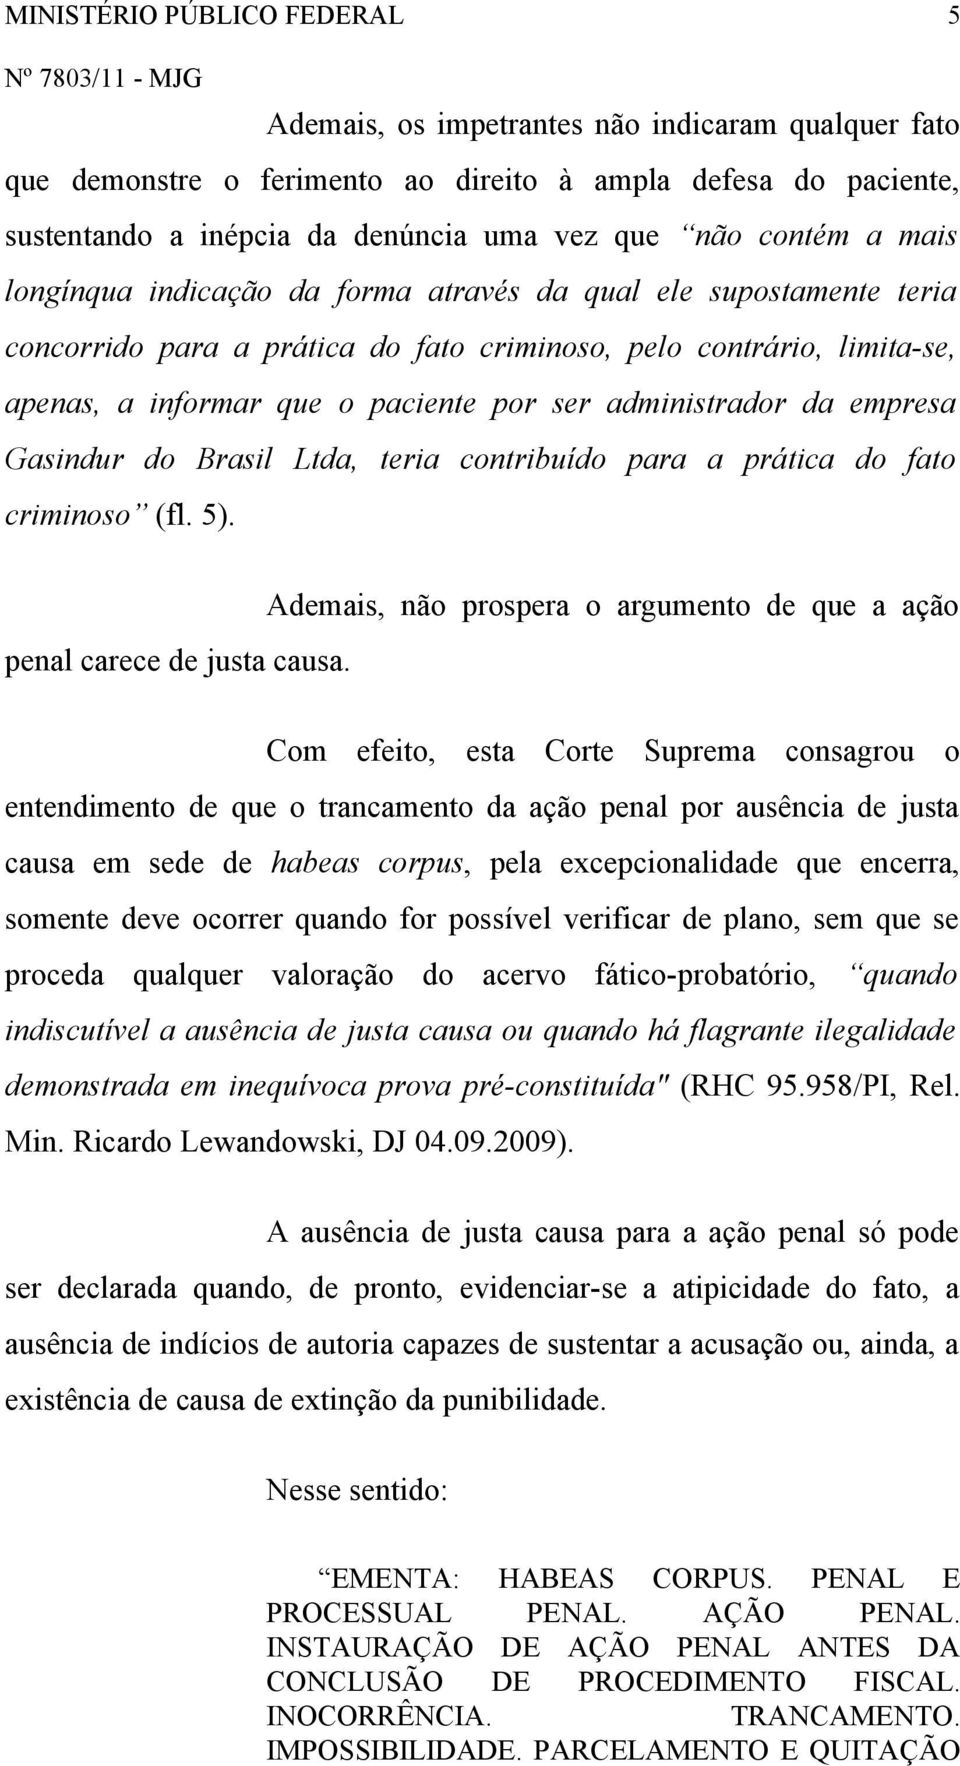 administrador da empresa Gasindur do Brasil Ltda, teria contribuído para a prática do fato criminoso (fl. 5). penal carece de justa causa.